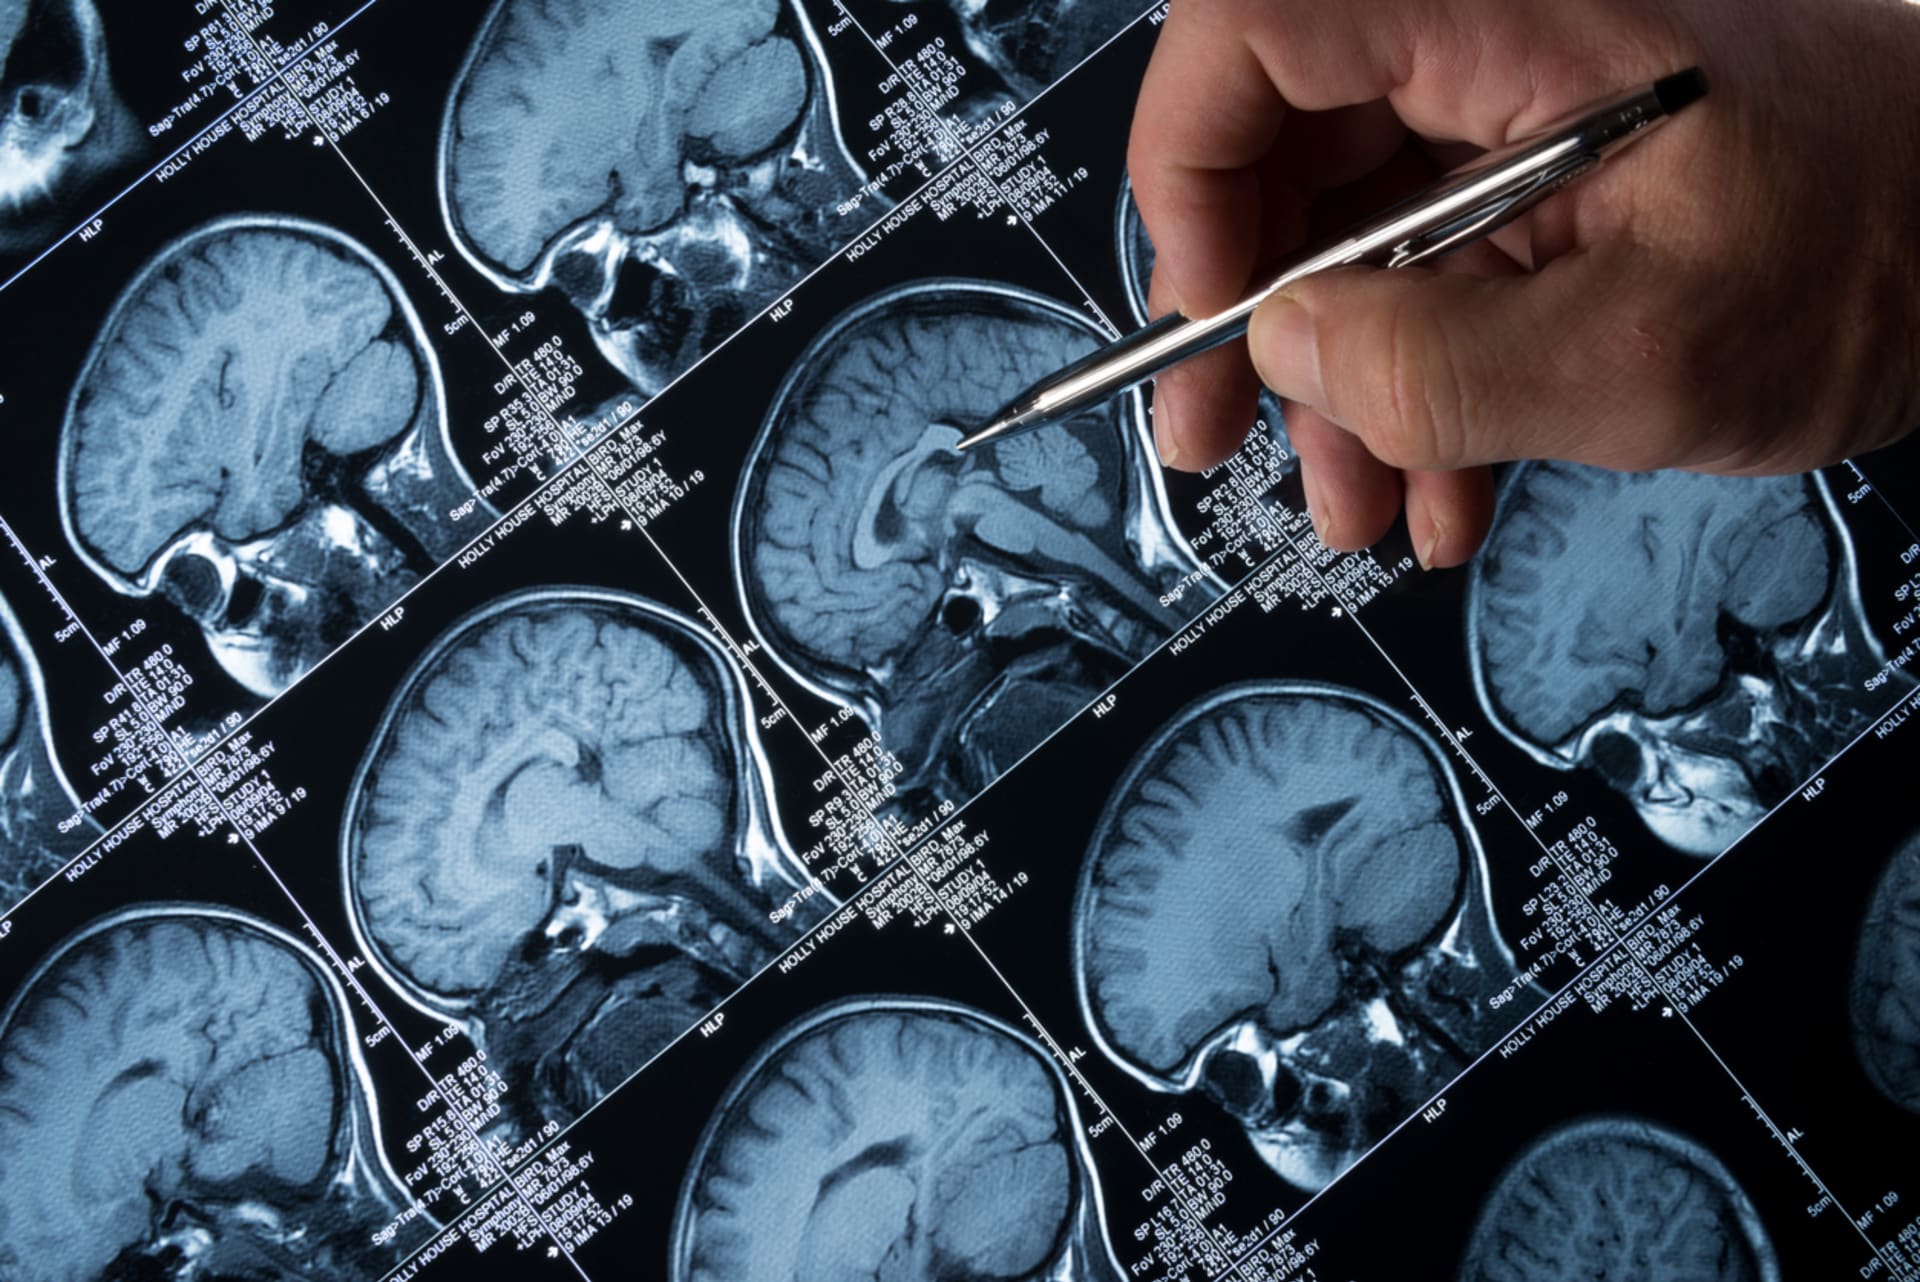 Mozek během nemoci viditelně degeneruje